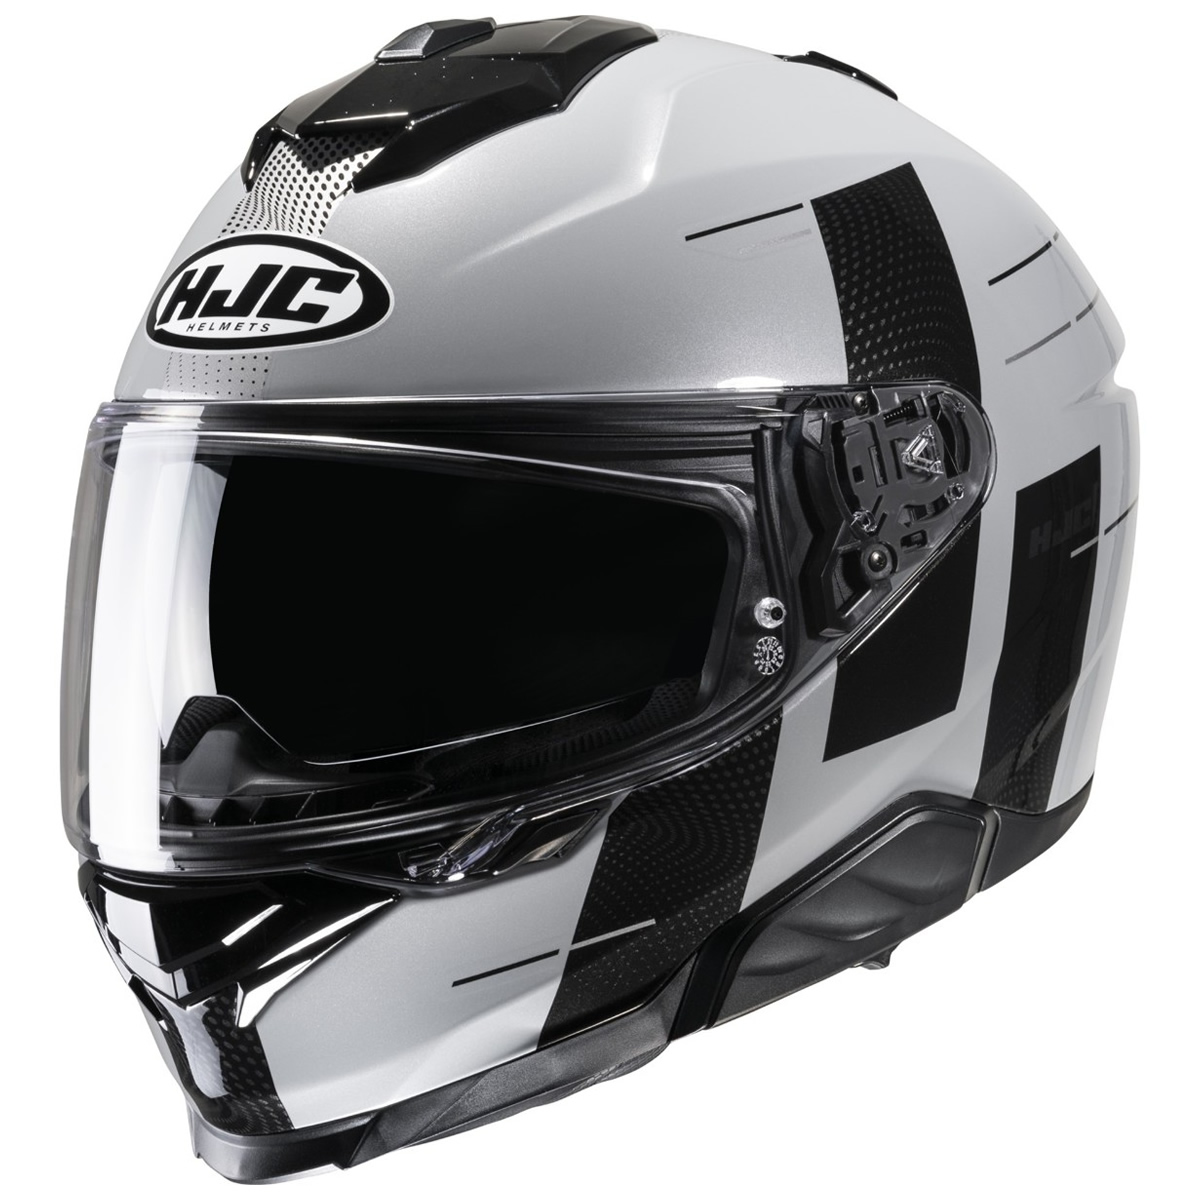 HJC Helm i71 Peka, grau-schwarz